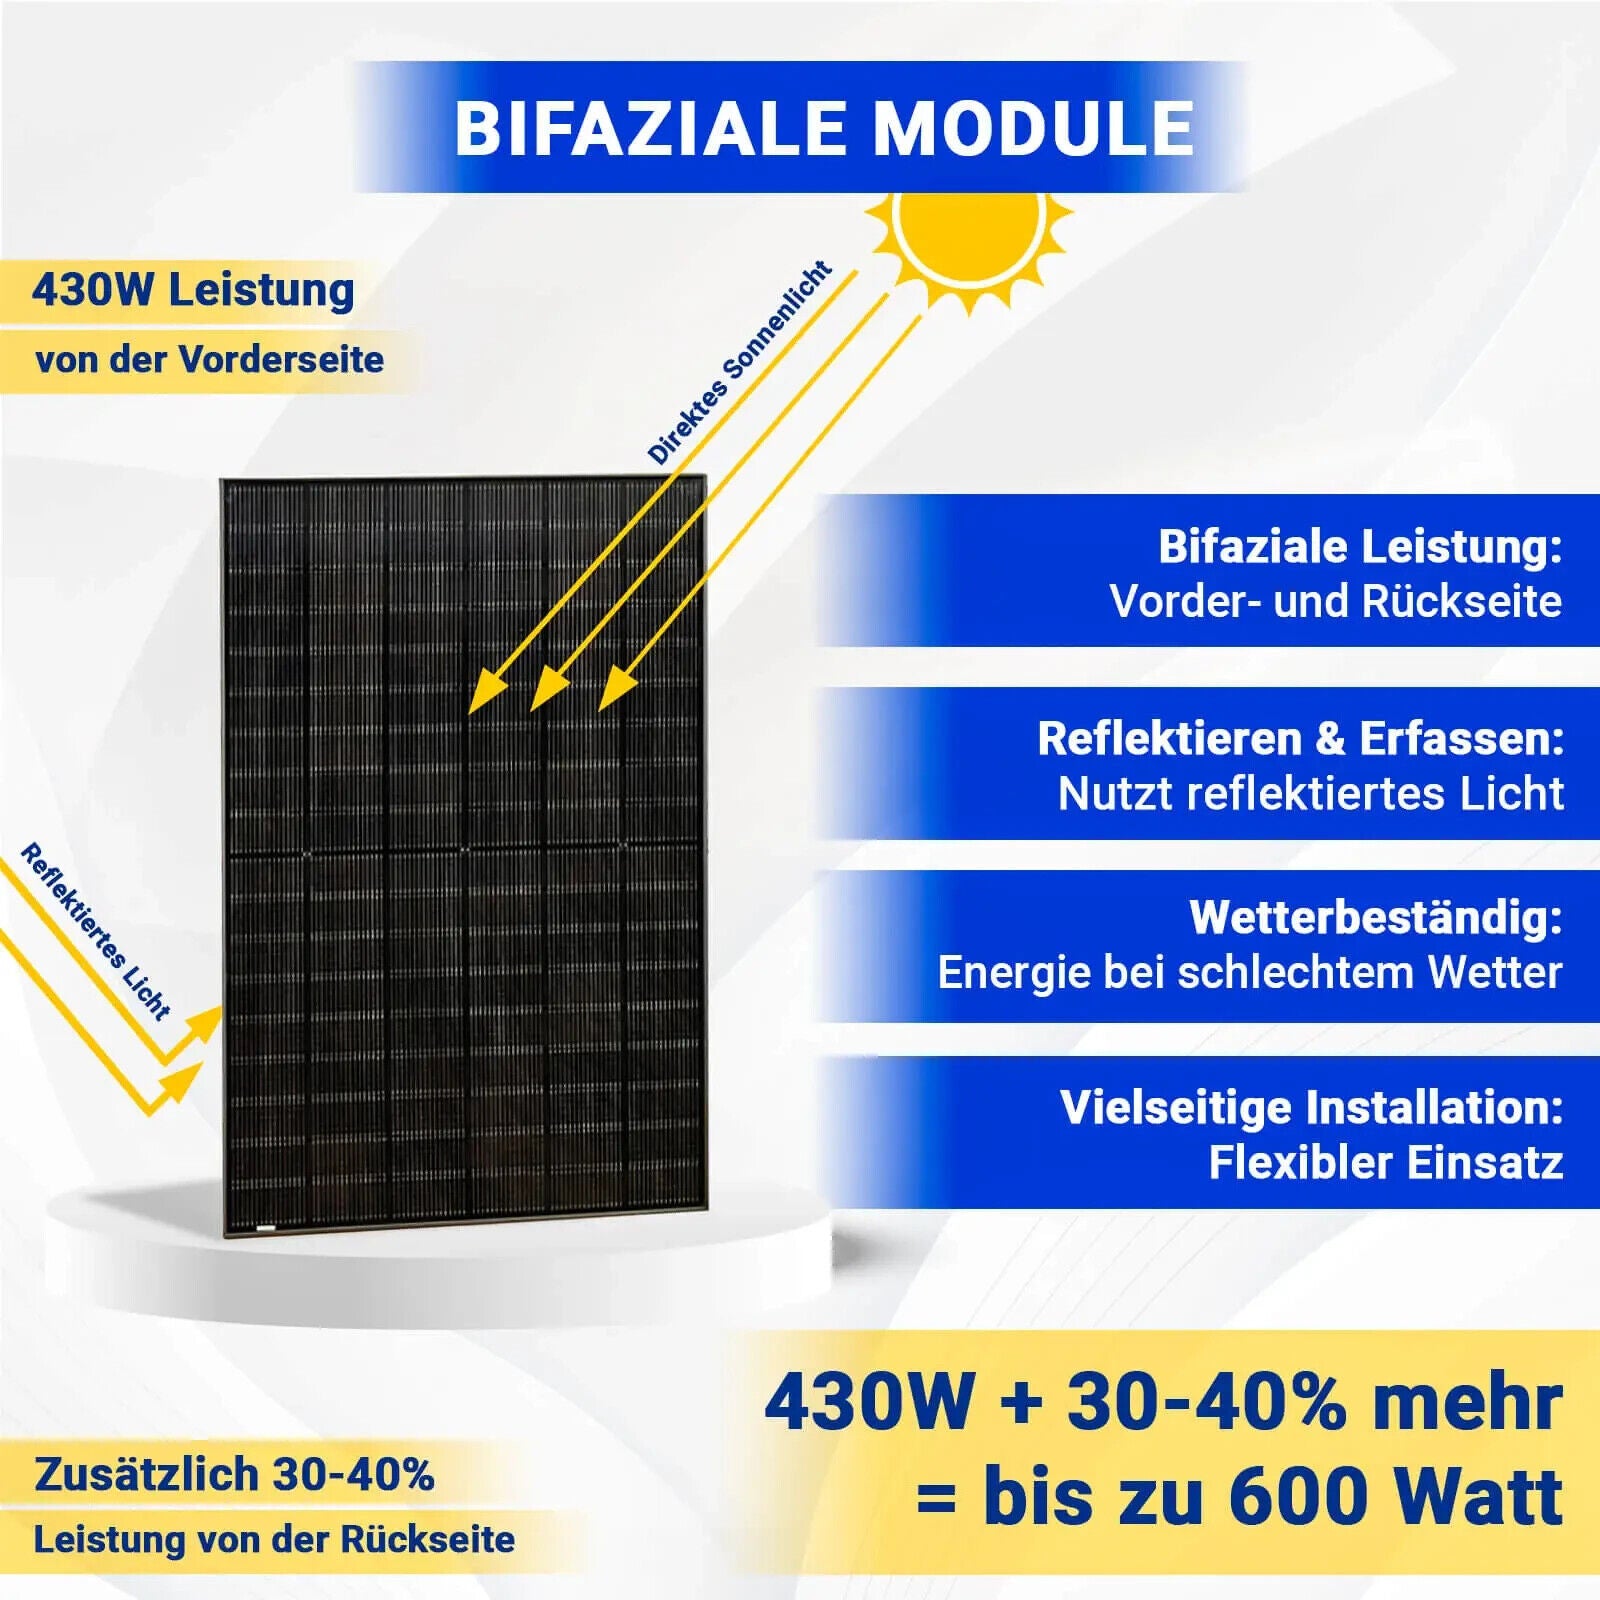 2x 430W Bifazial Solarmodul Glas-Glas Full Black - PV Modul